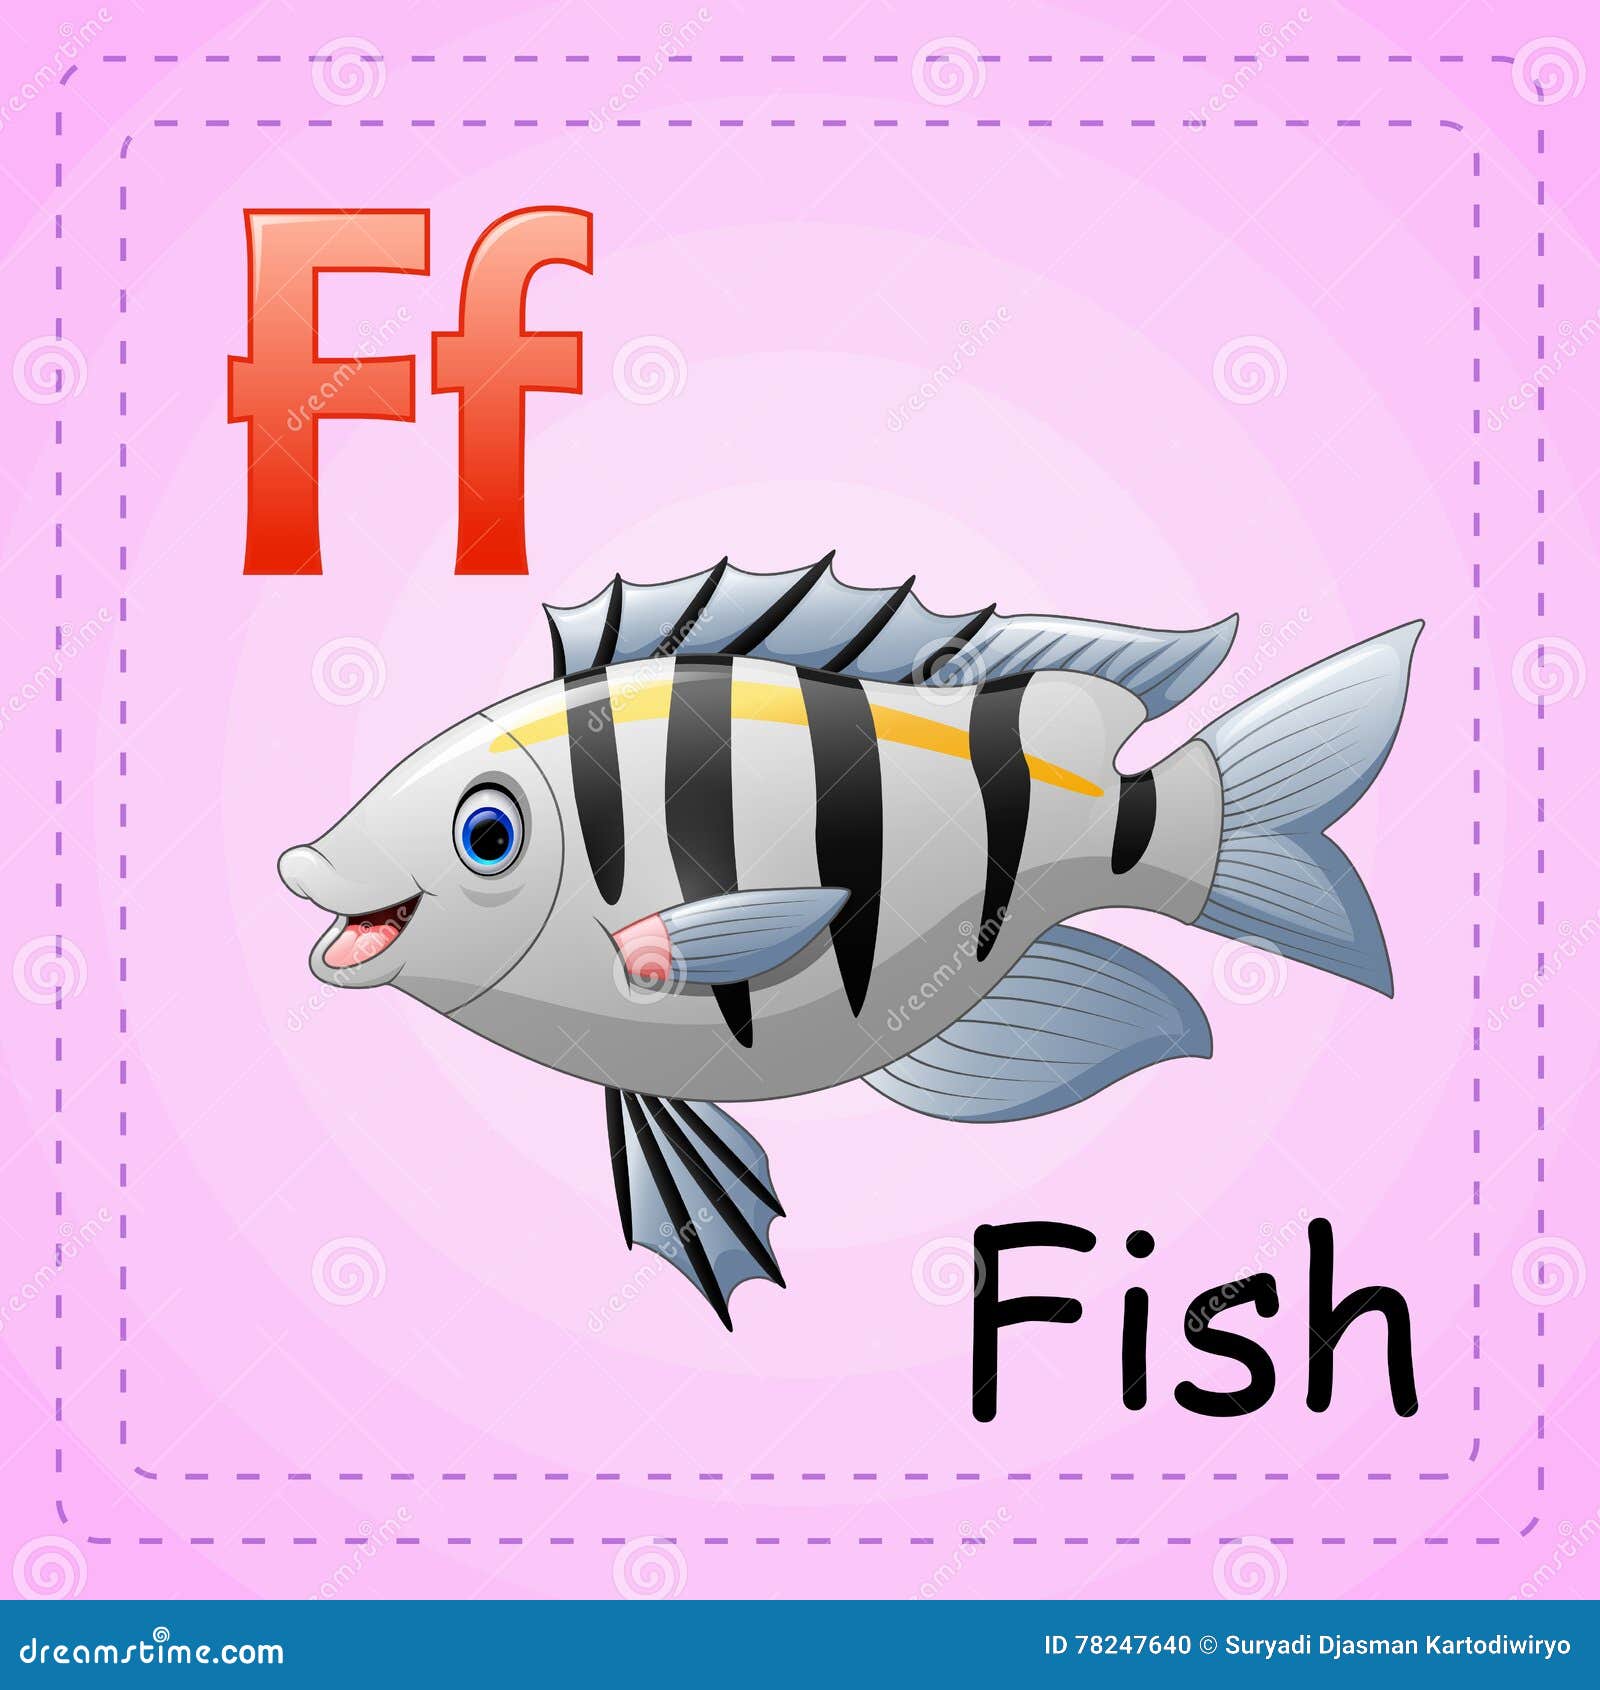 Про рыбу на английском. Карточки рыбы карточки для детей. Карточка по английскому рыба. Карточка с изображением рыбки. Буква f Fish для детей.